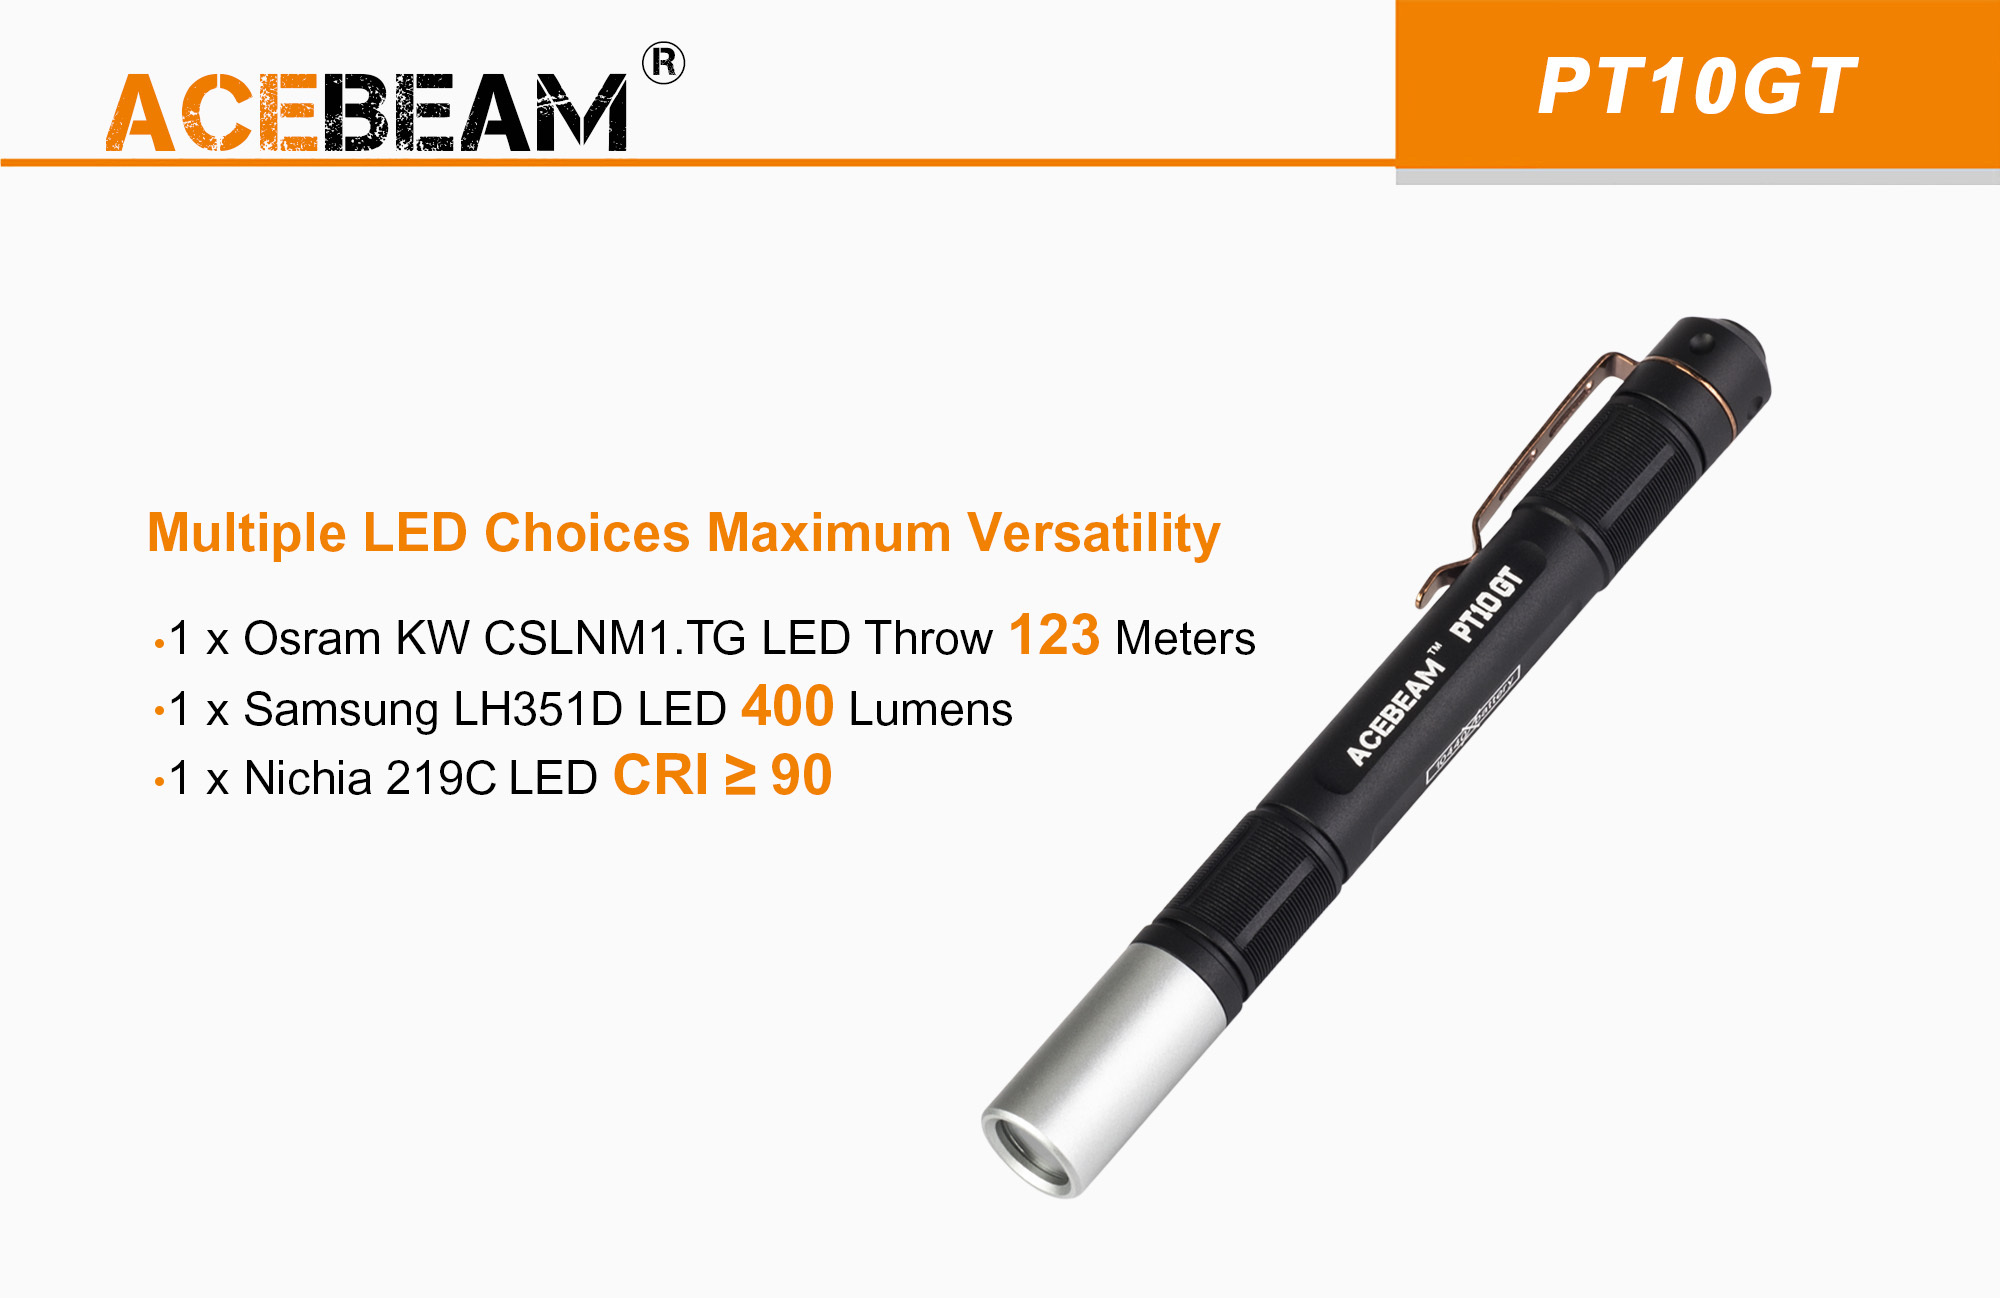 Acebaem PT10GT 1xOSRAM KW CSLNM1.TG LED/1xSAMSUNG LH351D LED Pen Light